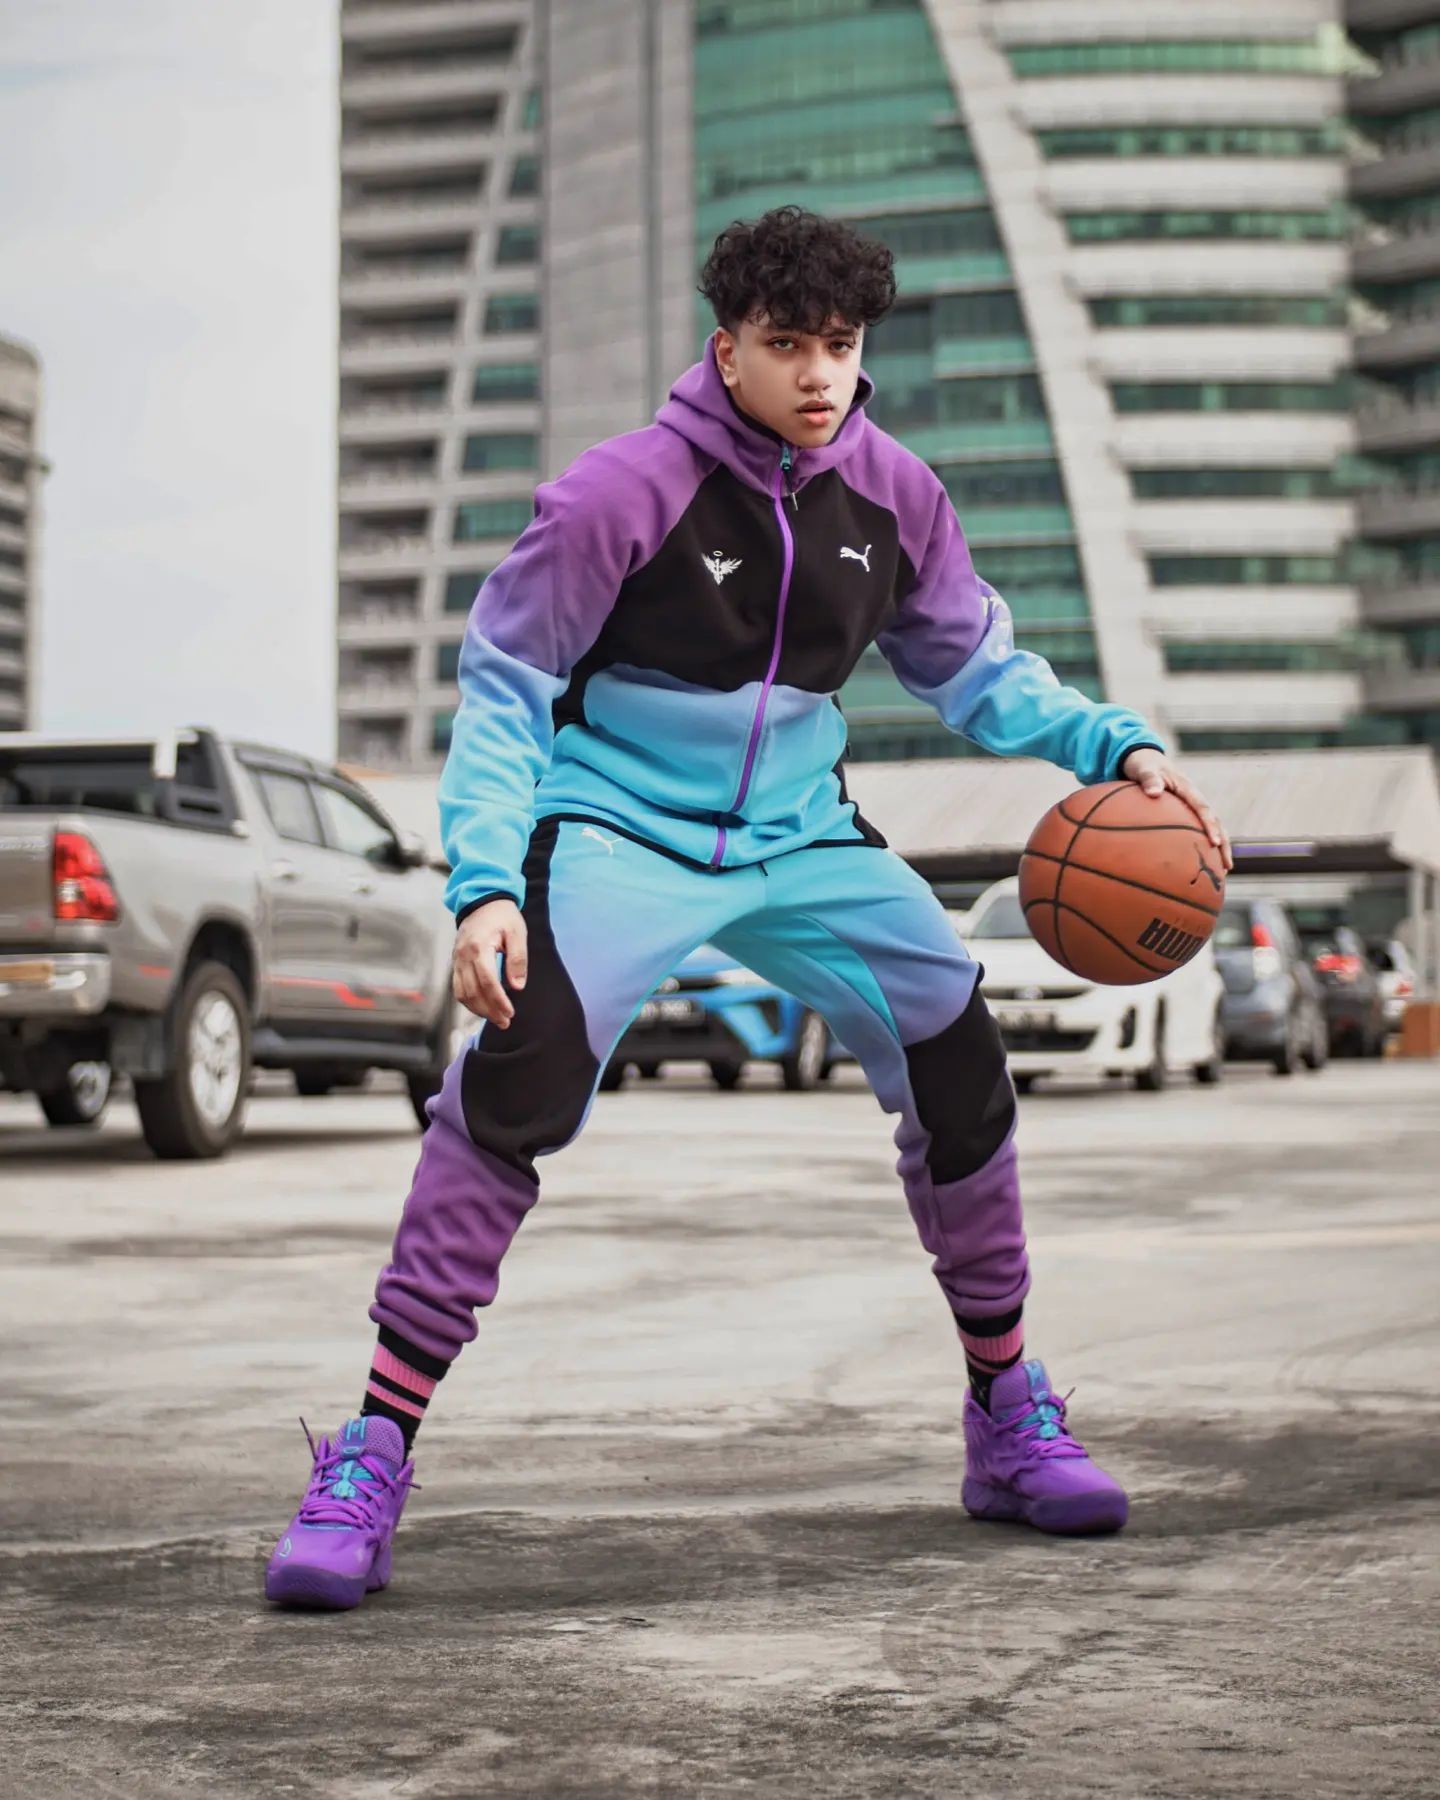 Basketballspieler in schwarz-blau-violetem PUMA Outfit und lilanen Baskettballschuhen beim Dribbeln am Parkplatz